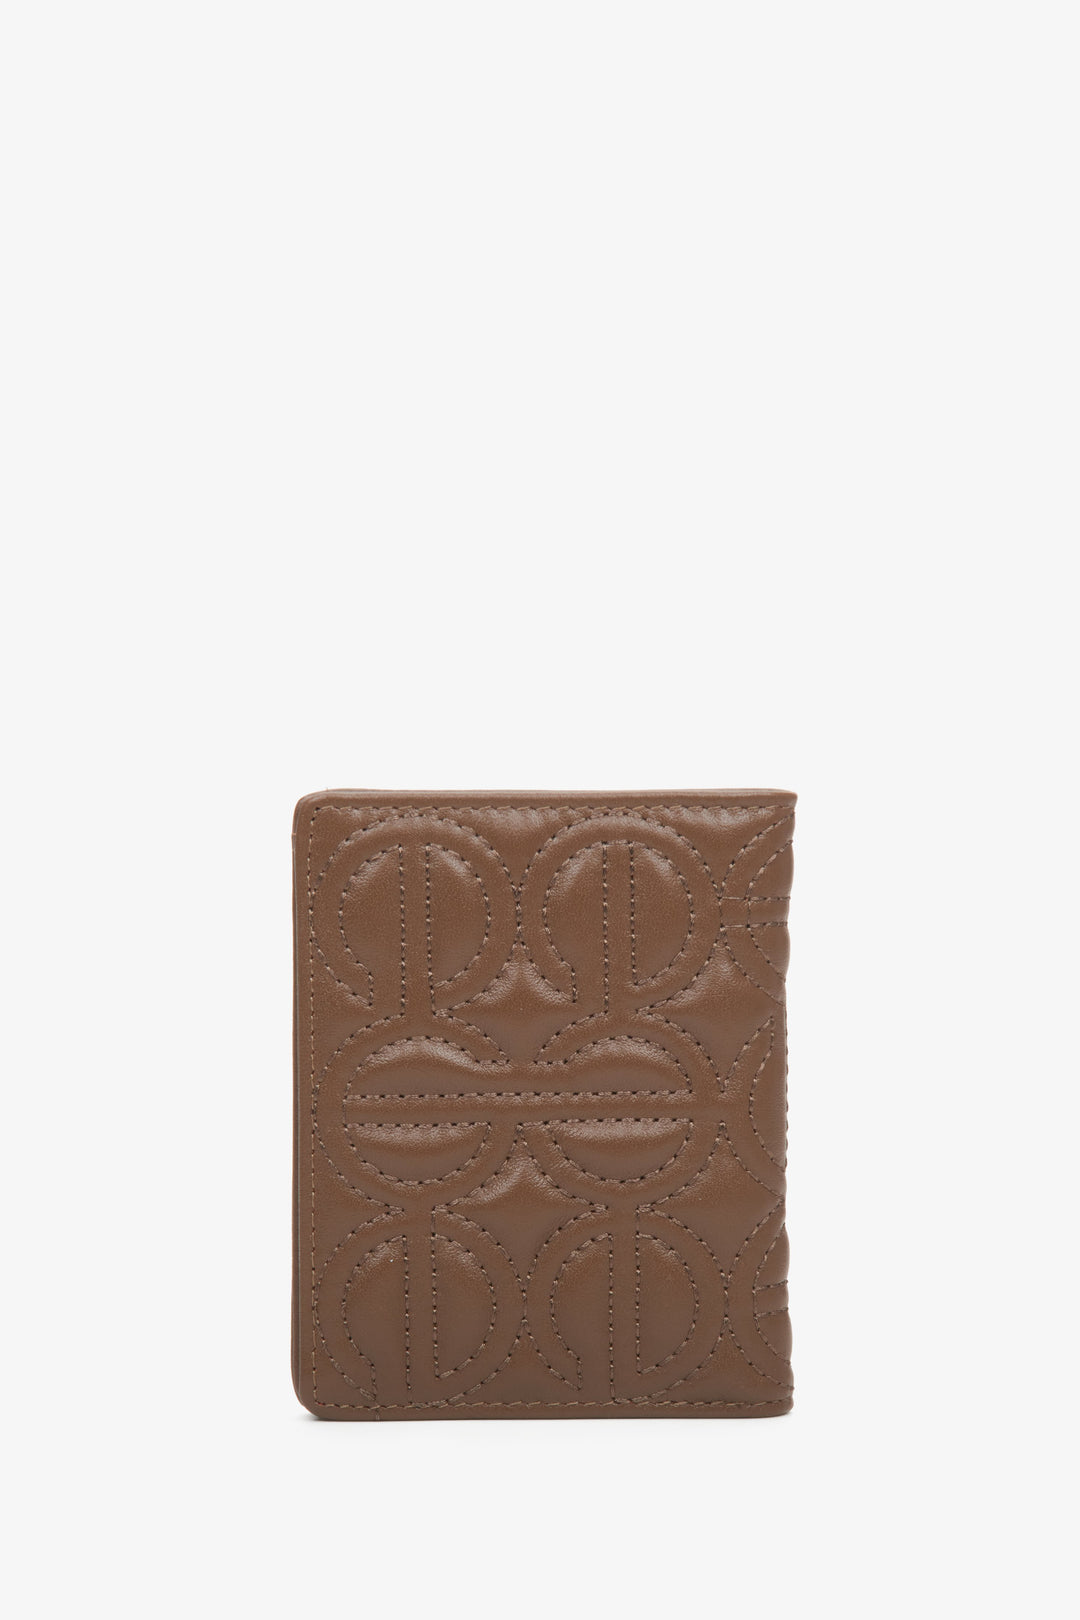 Skórzany, mały portfel damski w kolorze ciemnobrązowym marki Estro z tłoczonym logo.